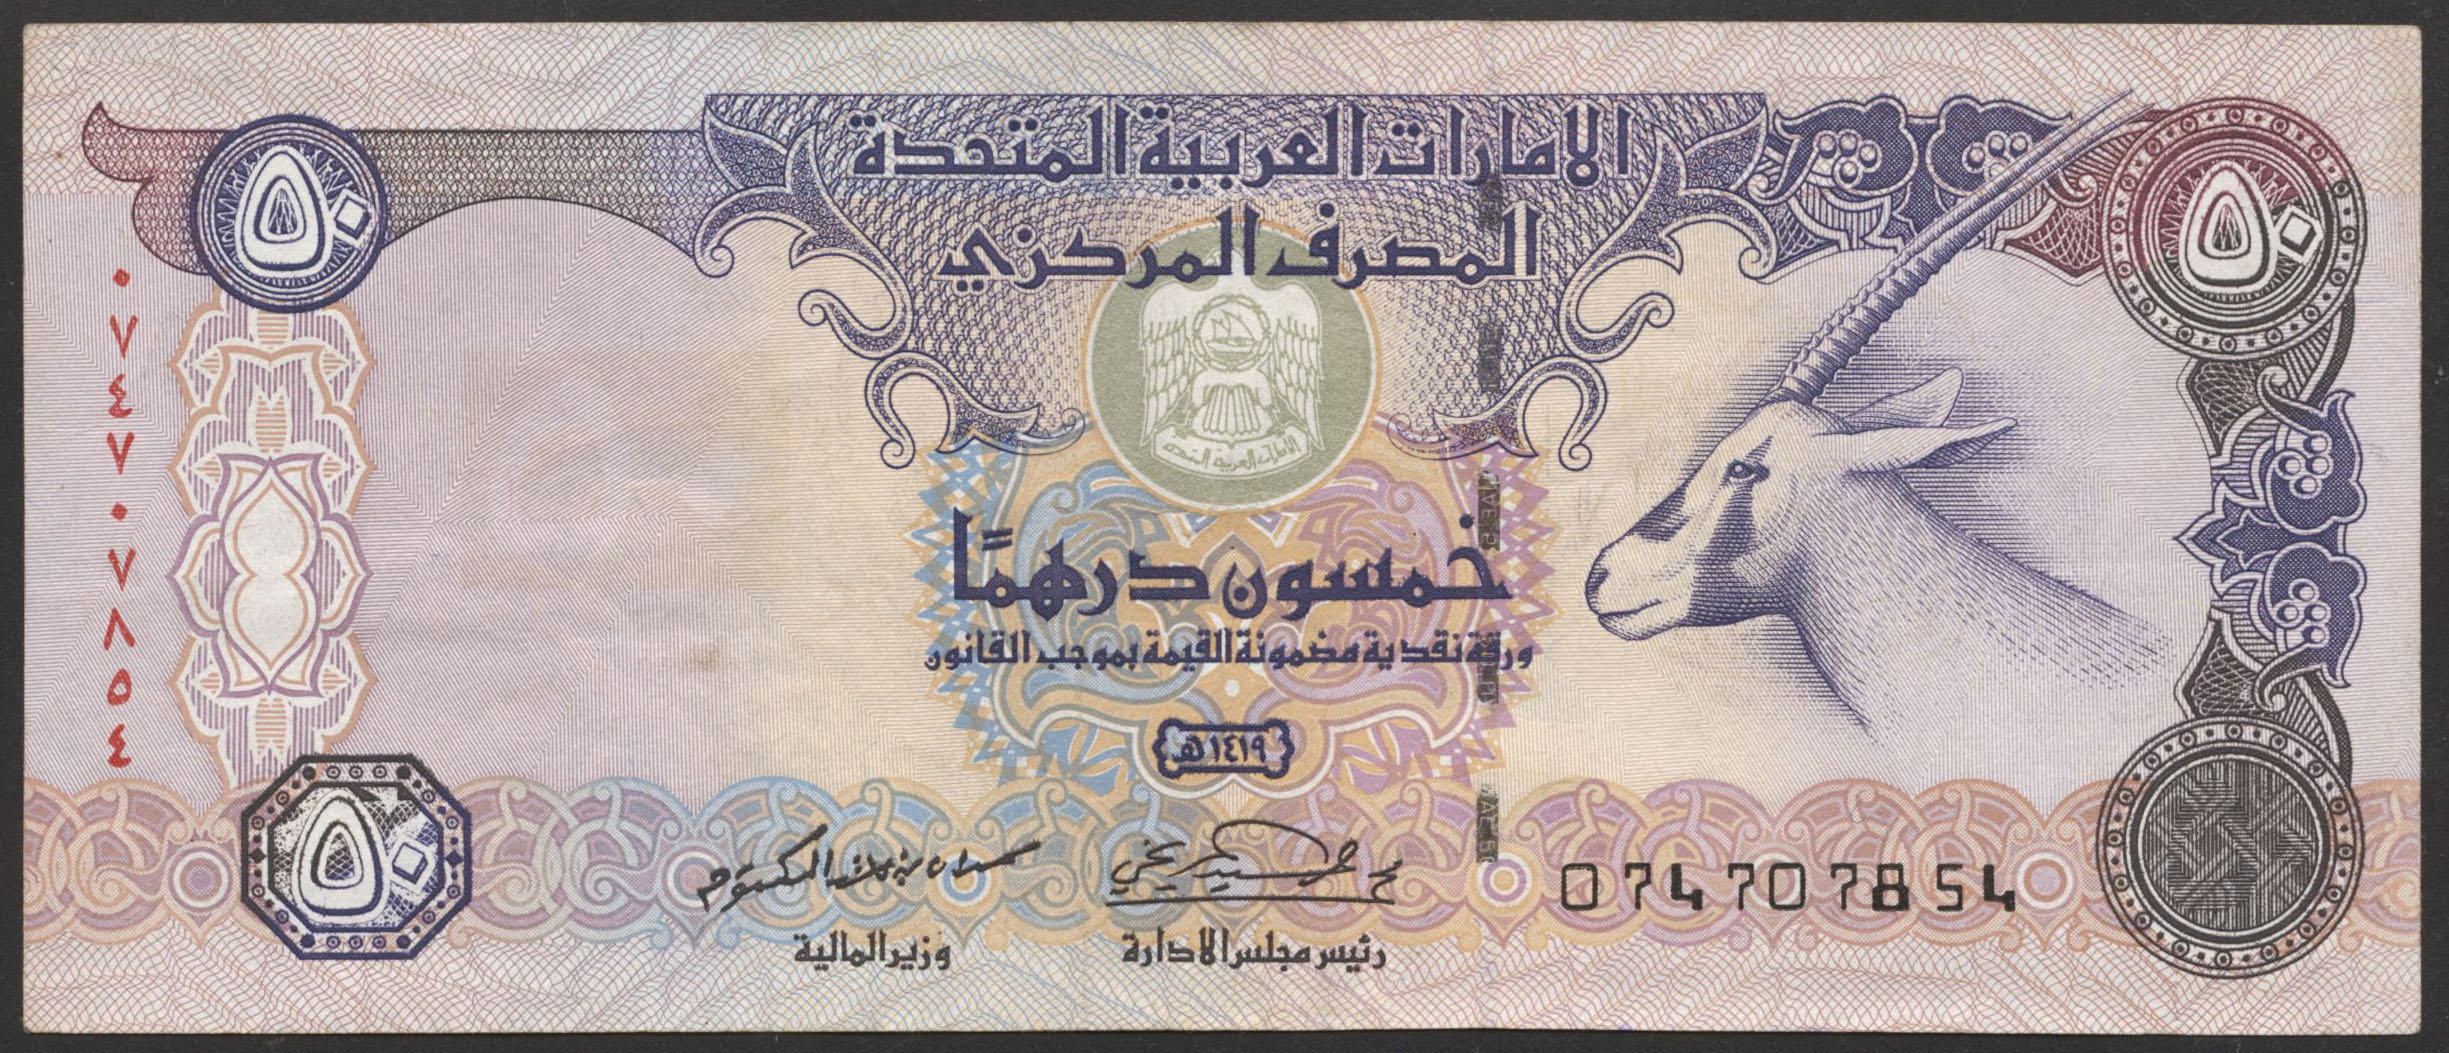 Купить дирхамы в нижнем. Банкноты United arab Emirates,2008, 50 dirhams. Купюры 50 дирхам эмираты. 50 Дирхам ОАЭ банкнота. 50 Дирхам купюра.